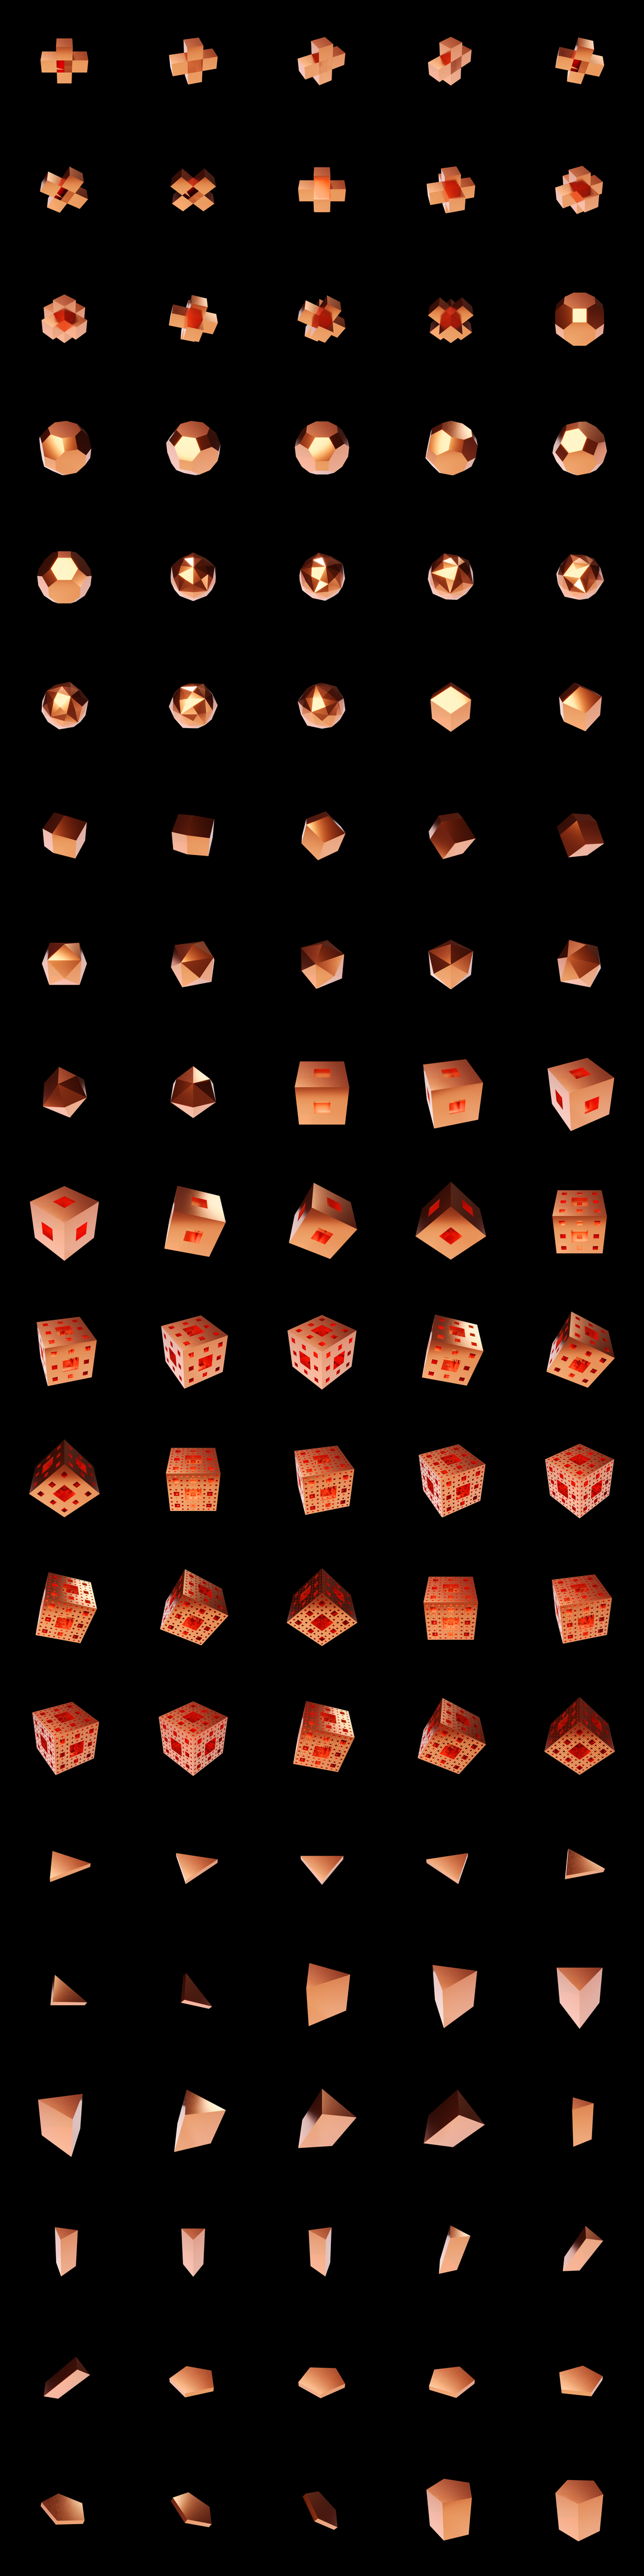 The Bundle - m.copper/b tile image 2